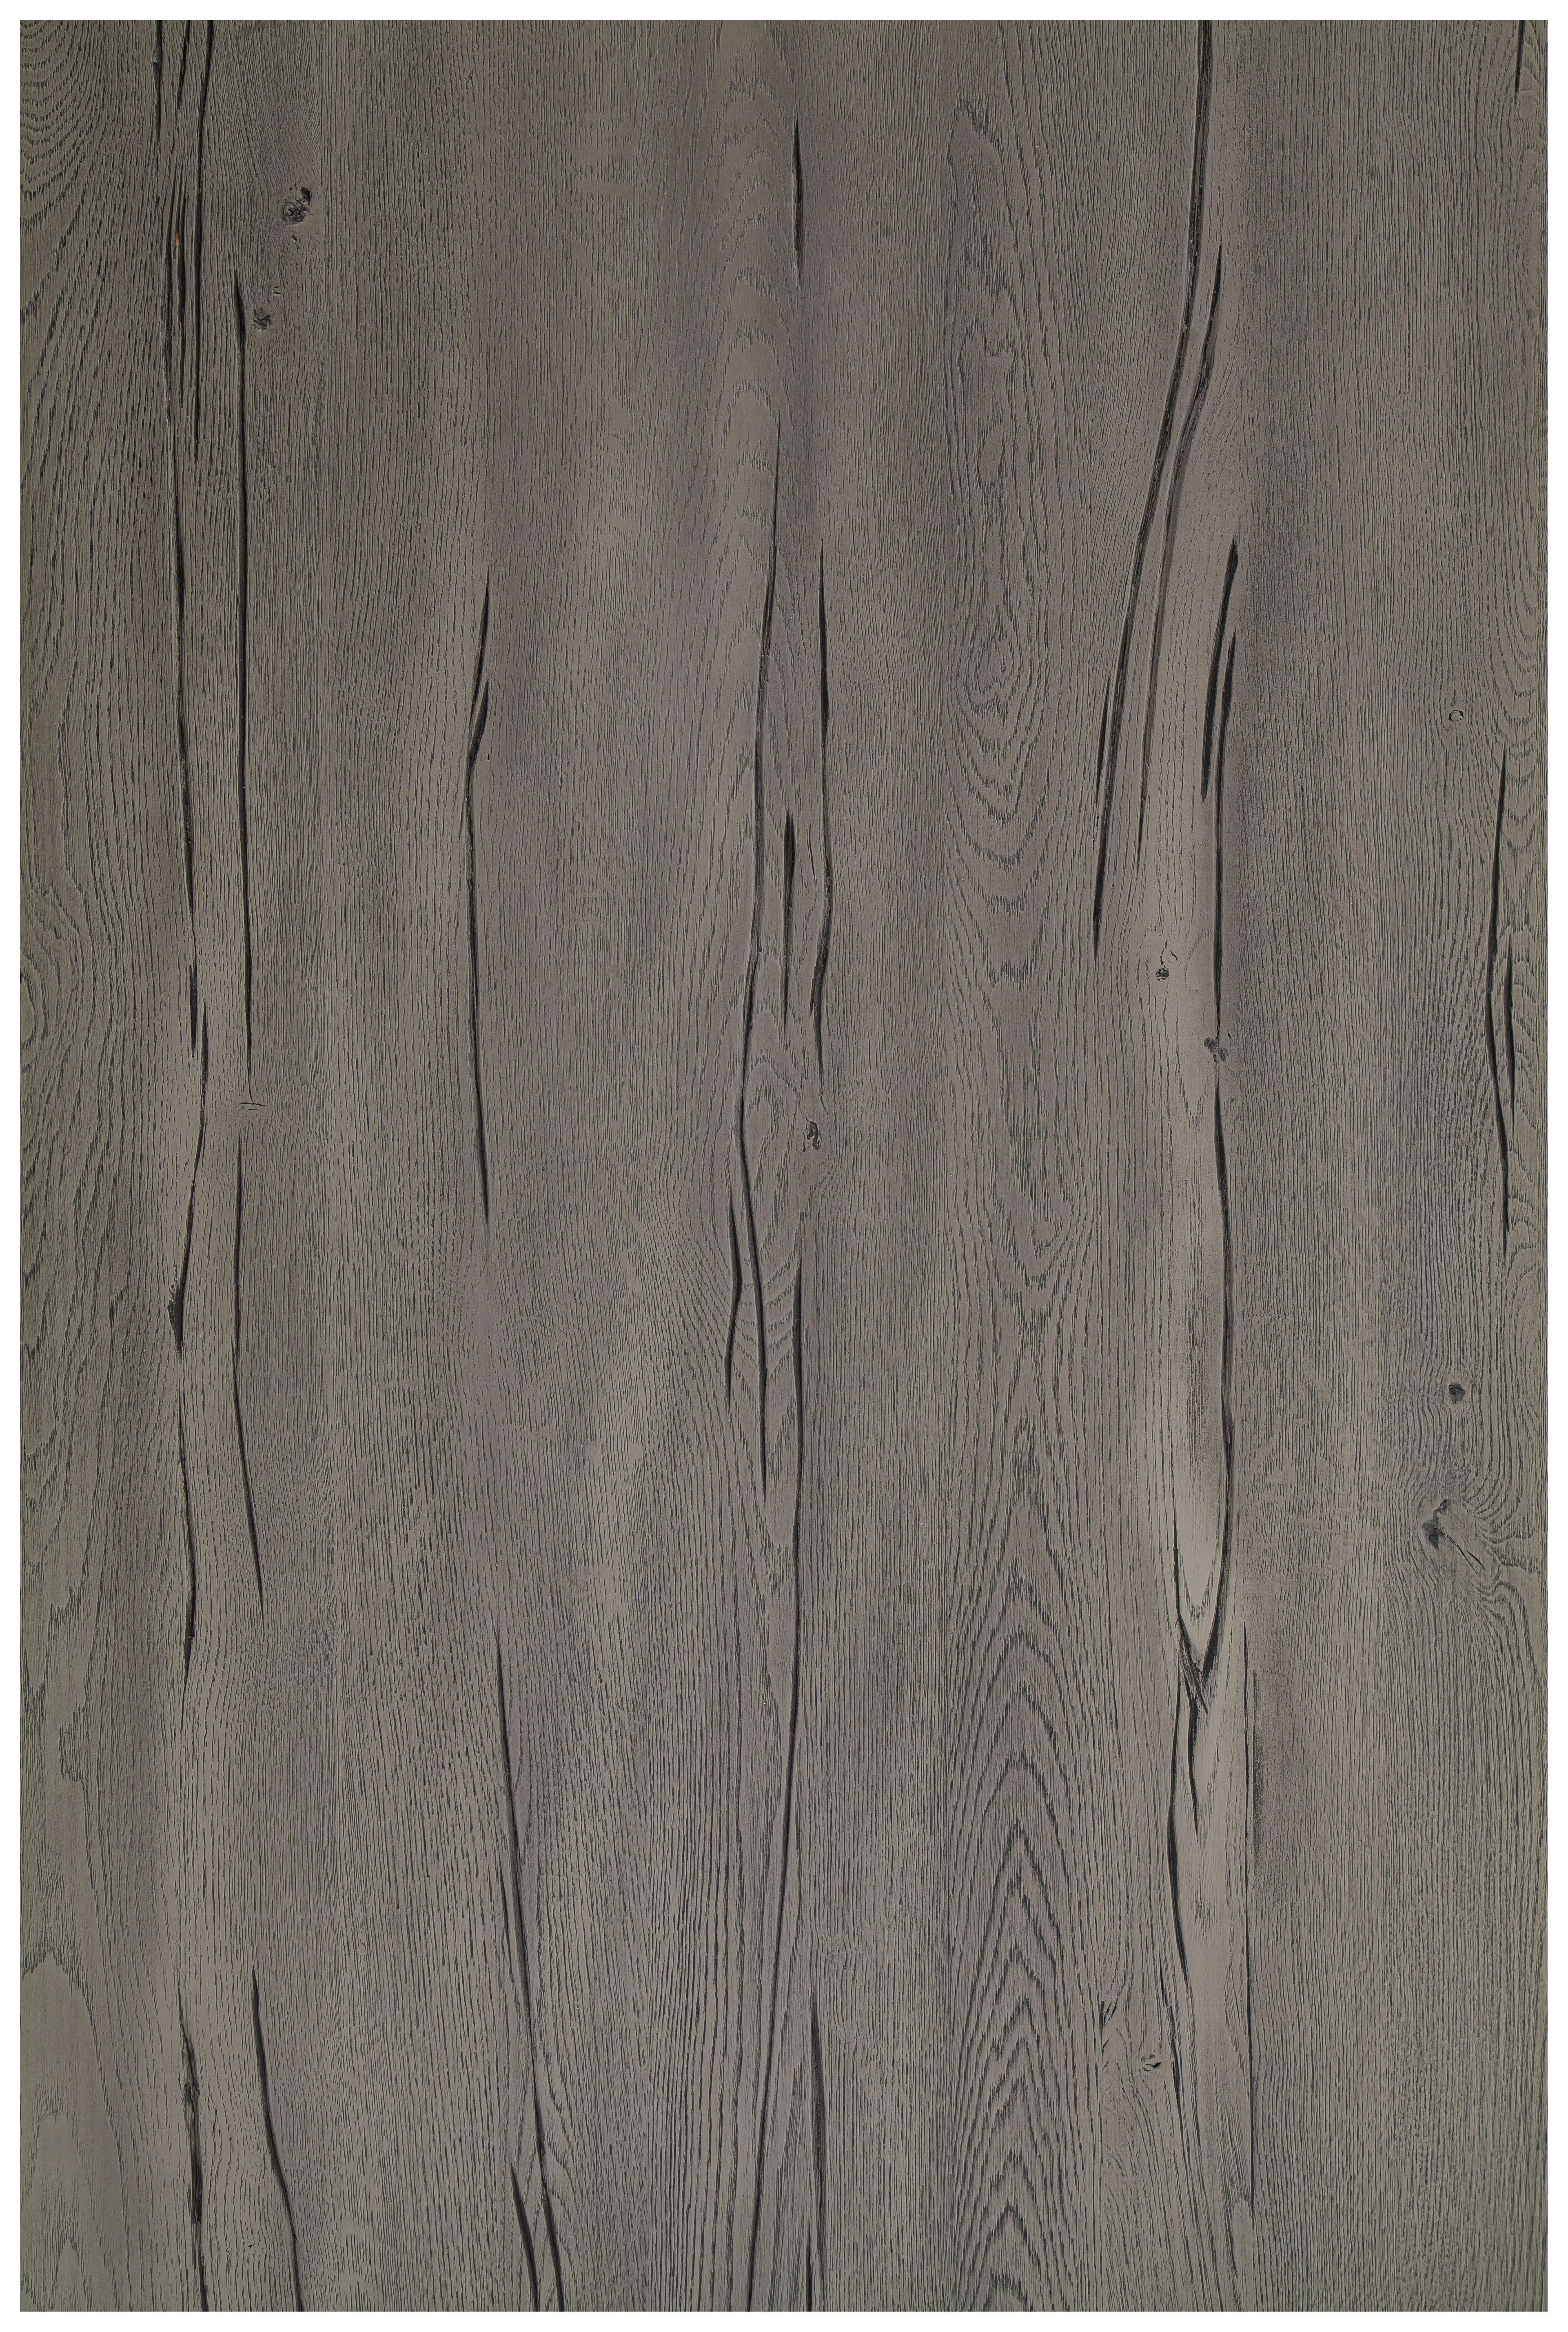 TISCHPLATTE - Trapez Kante 160/90/6 cm Eiche massiv Holz Grau, Eichefarben  - Eichefarben/Grau, Design, Holz (160/90/6cm) - Waldwelt